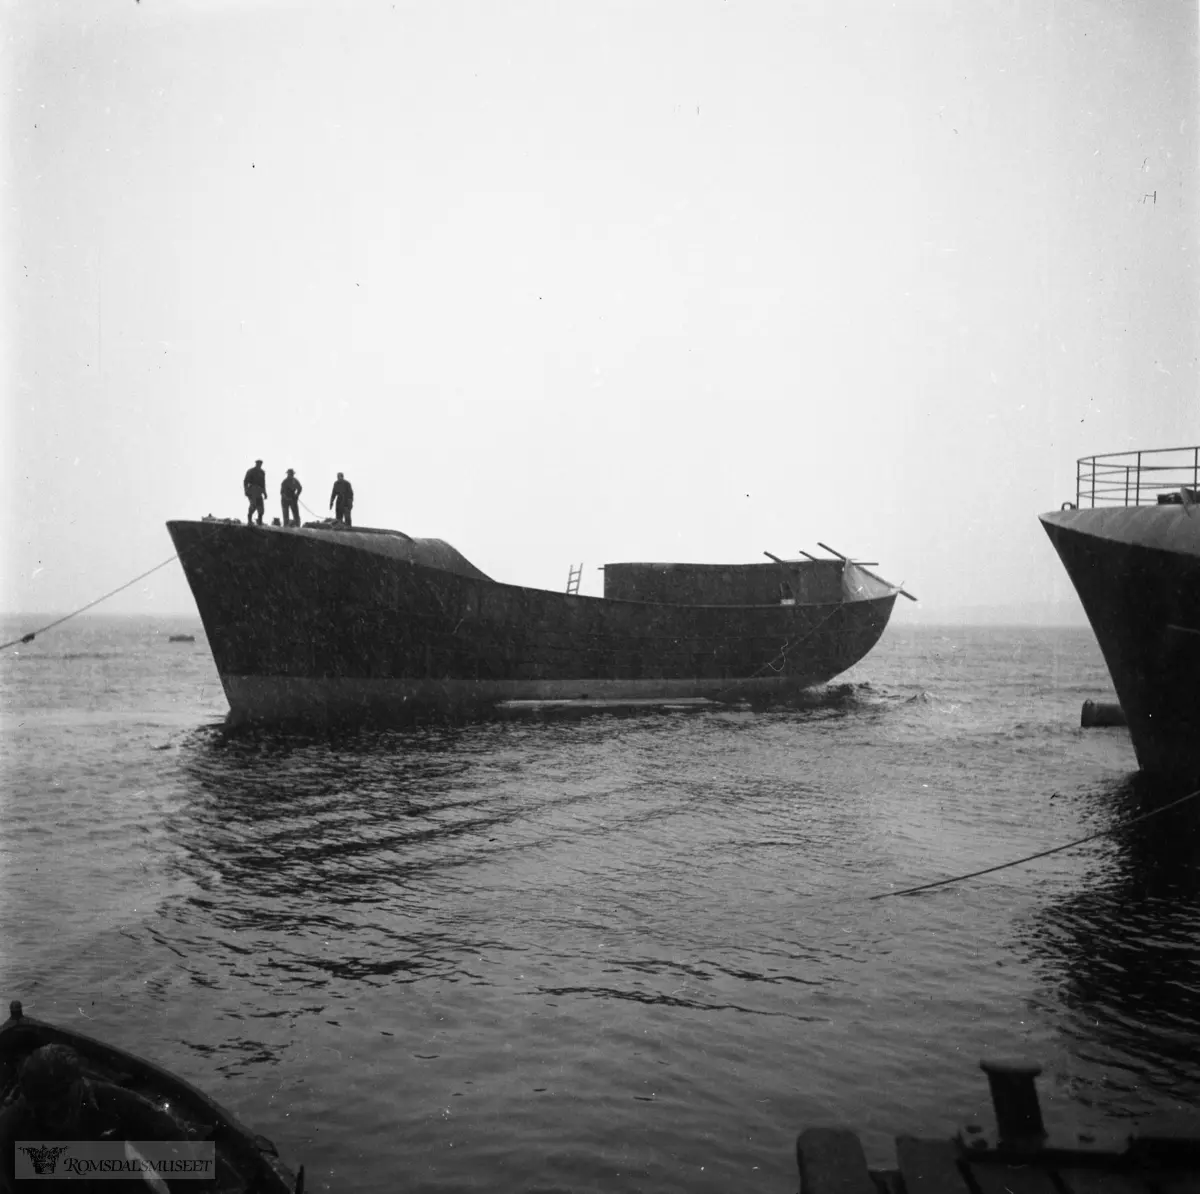 "Sjøsetting av Islandsbåt 10.02.1962 i snøfokk" "Titan" "Byggenummer 168" "Dåp?" "1958" "Bolsønes Verft"